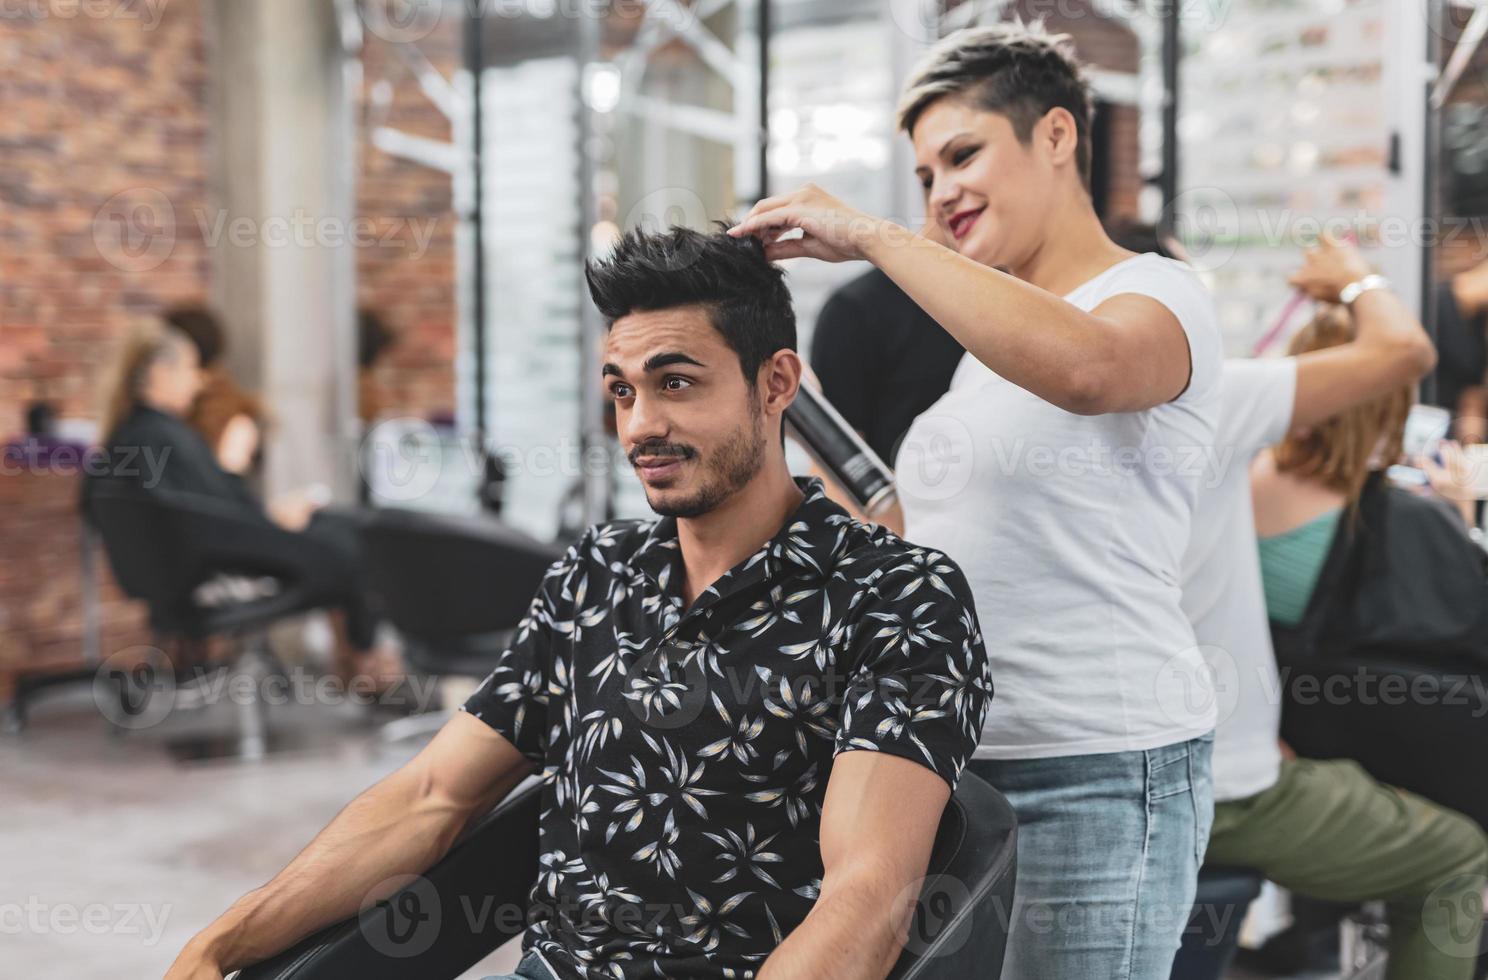 cabeleireiro profissional está cortando o cabelo masculino no salão de beleza. foto